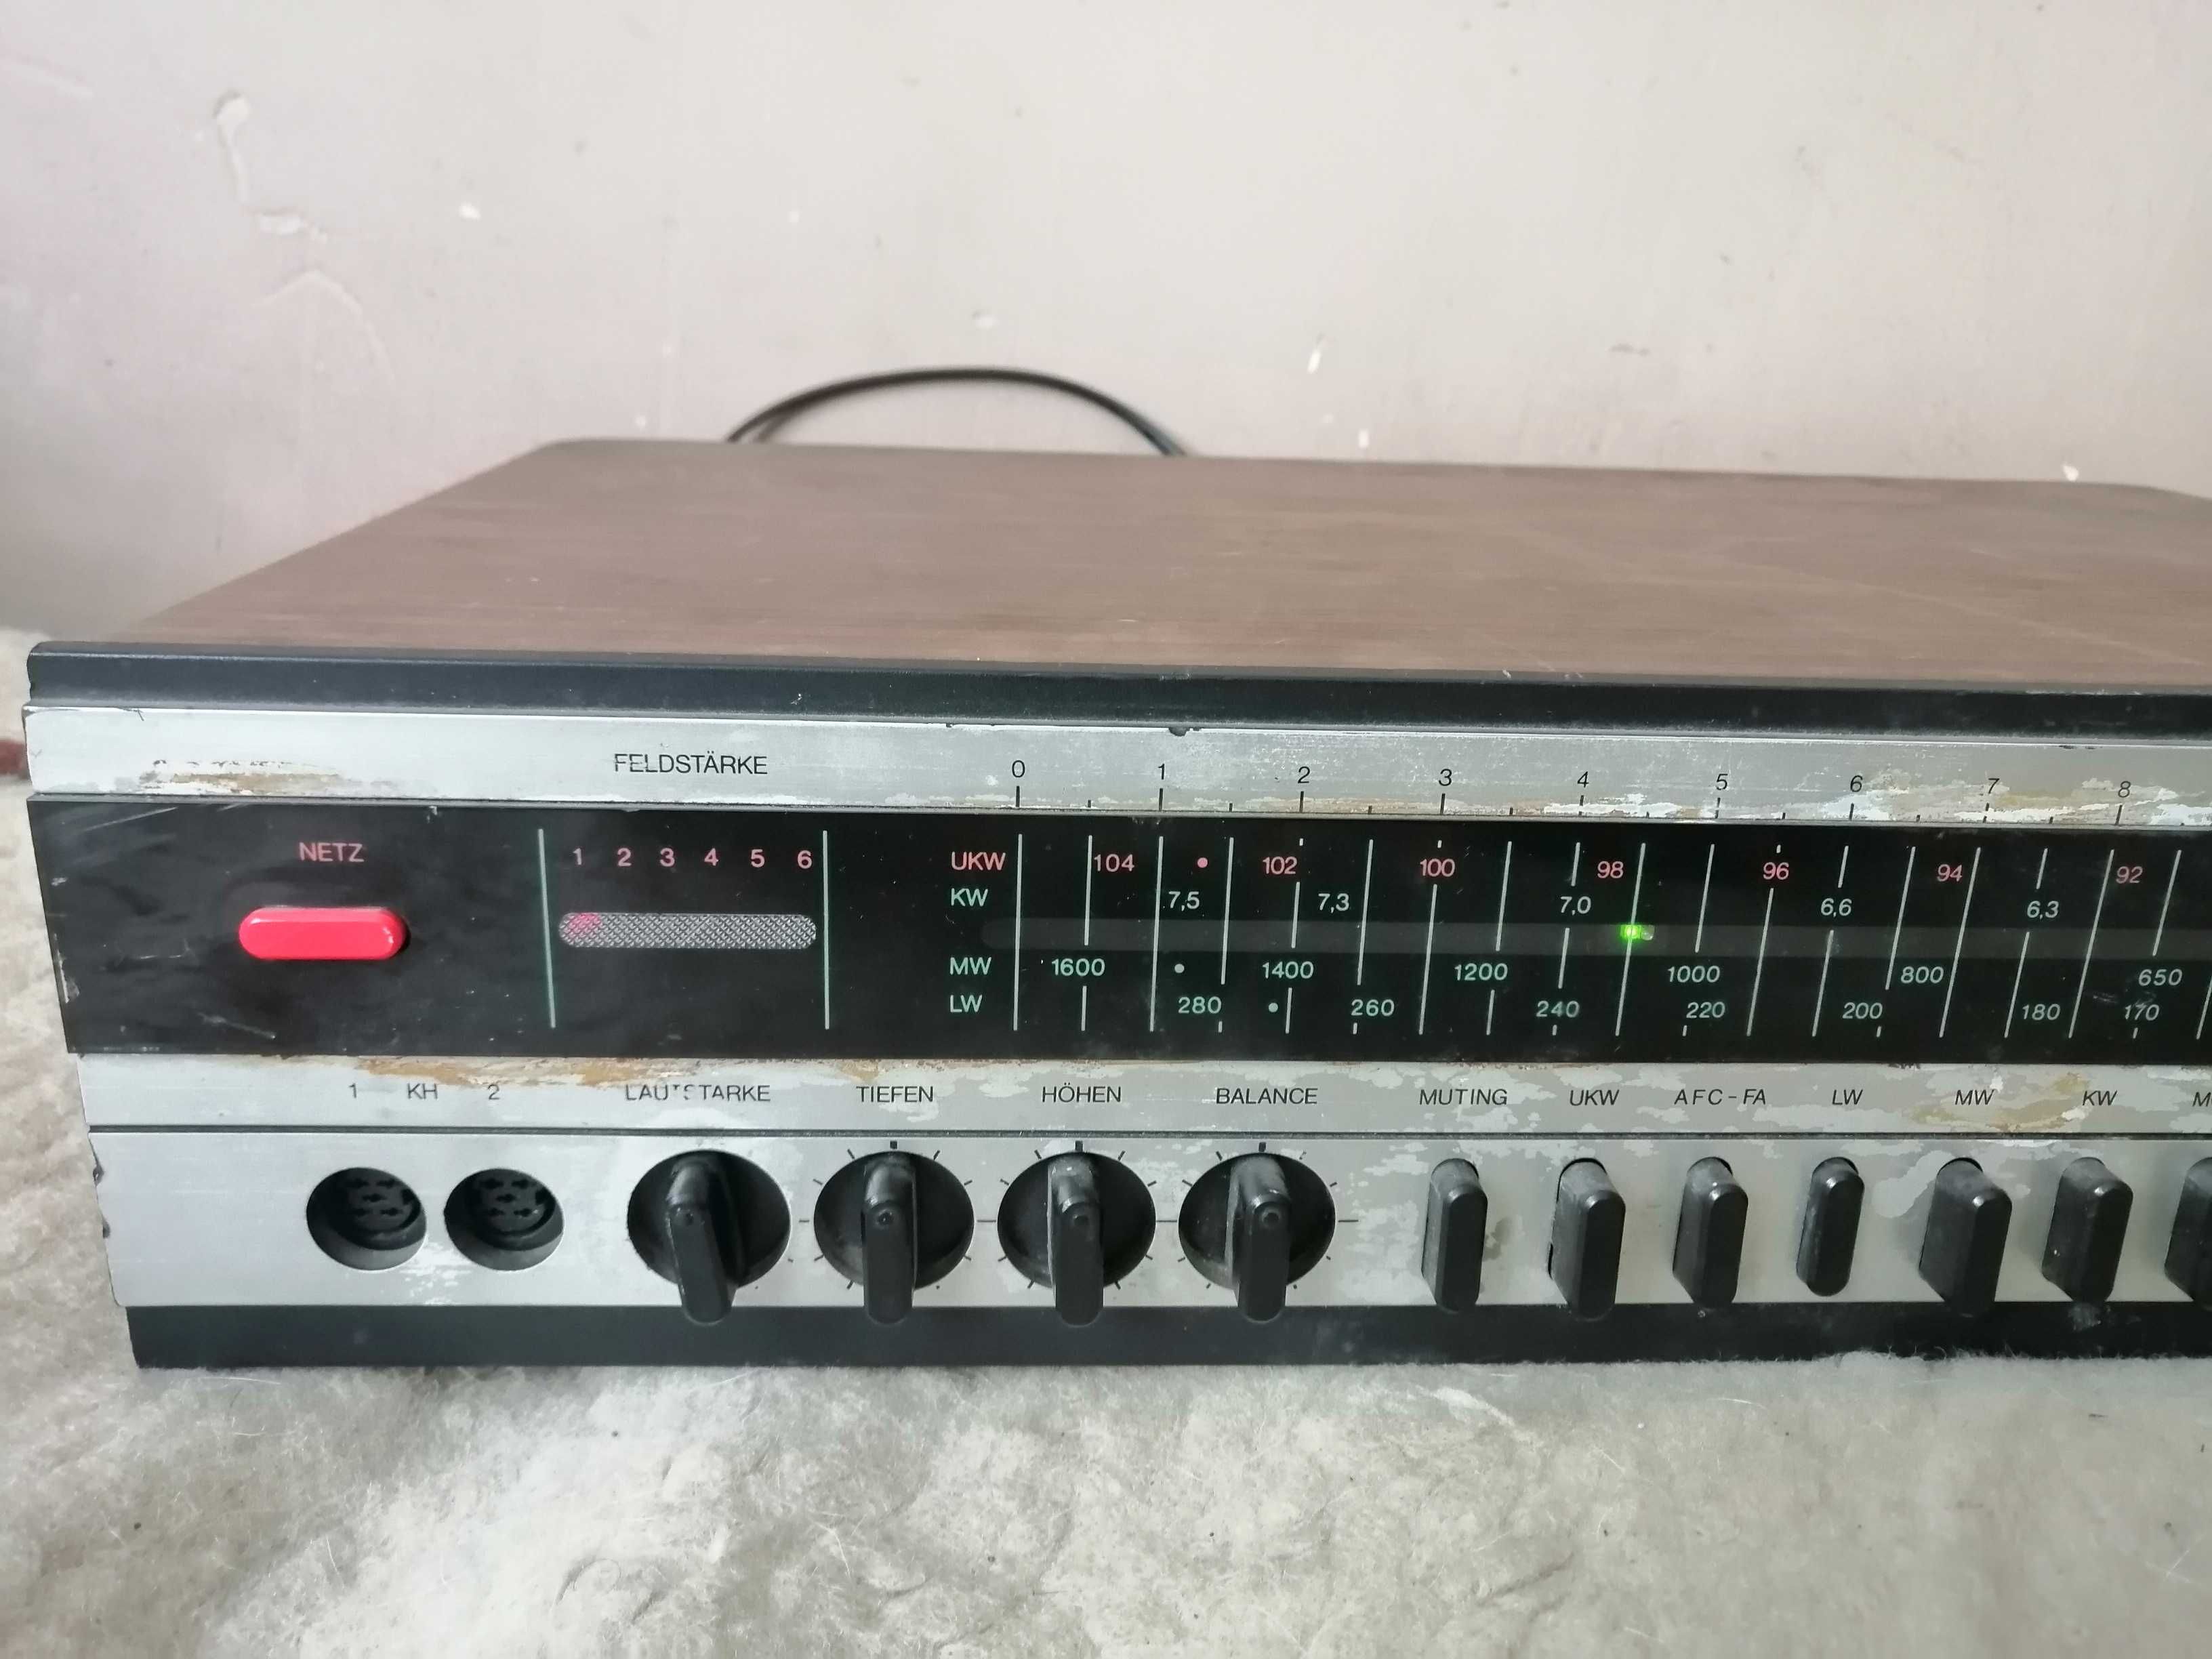 amplituner Stereo-Akkord SR1500